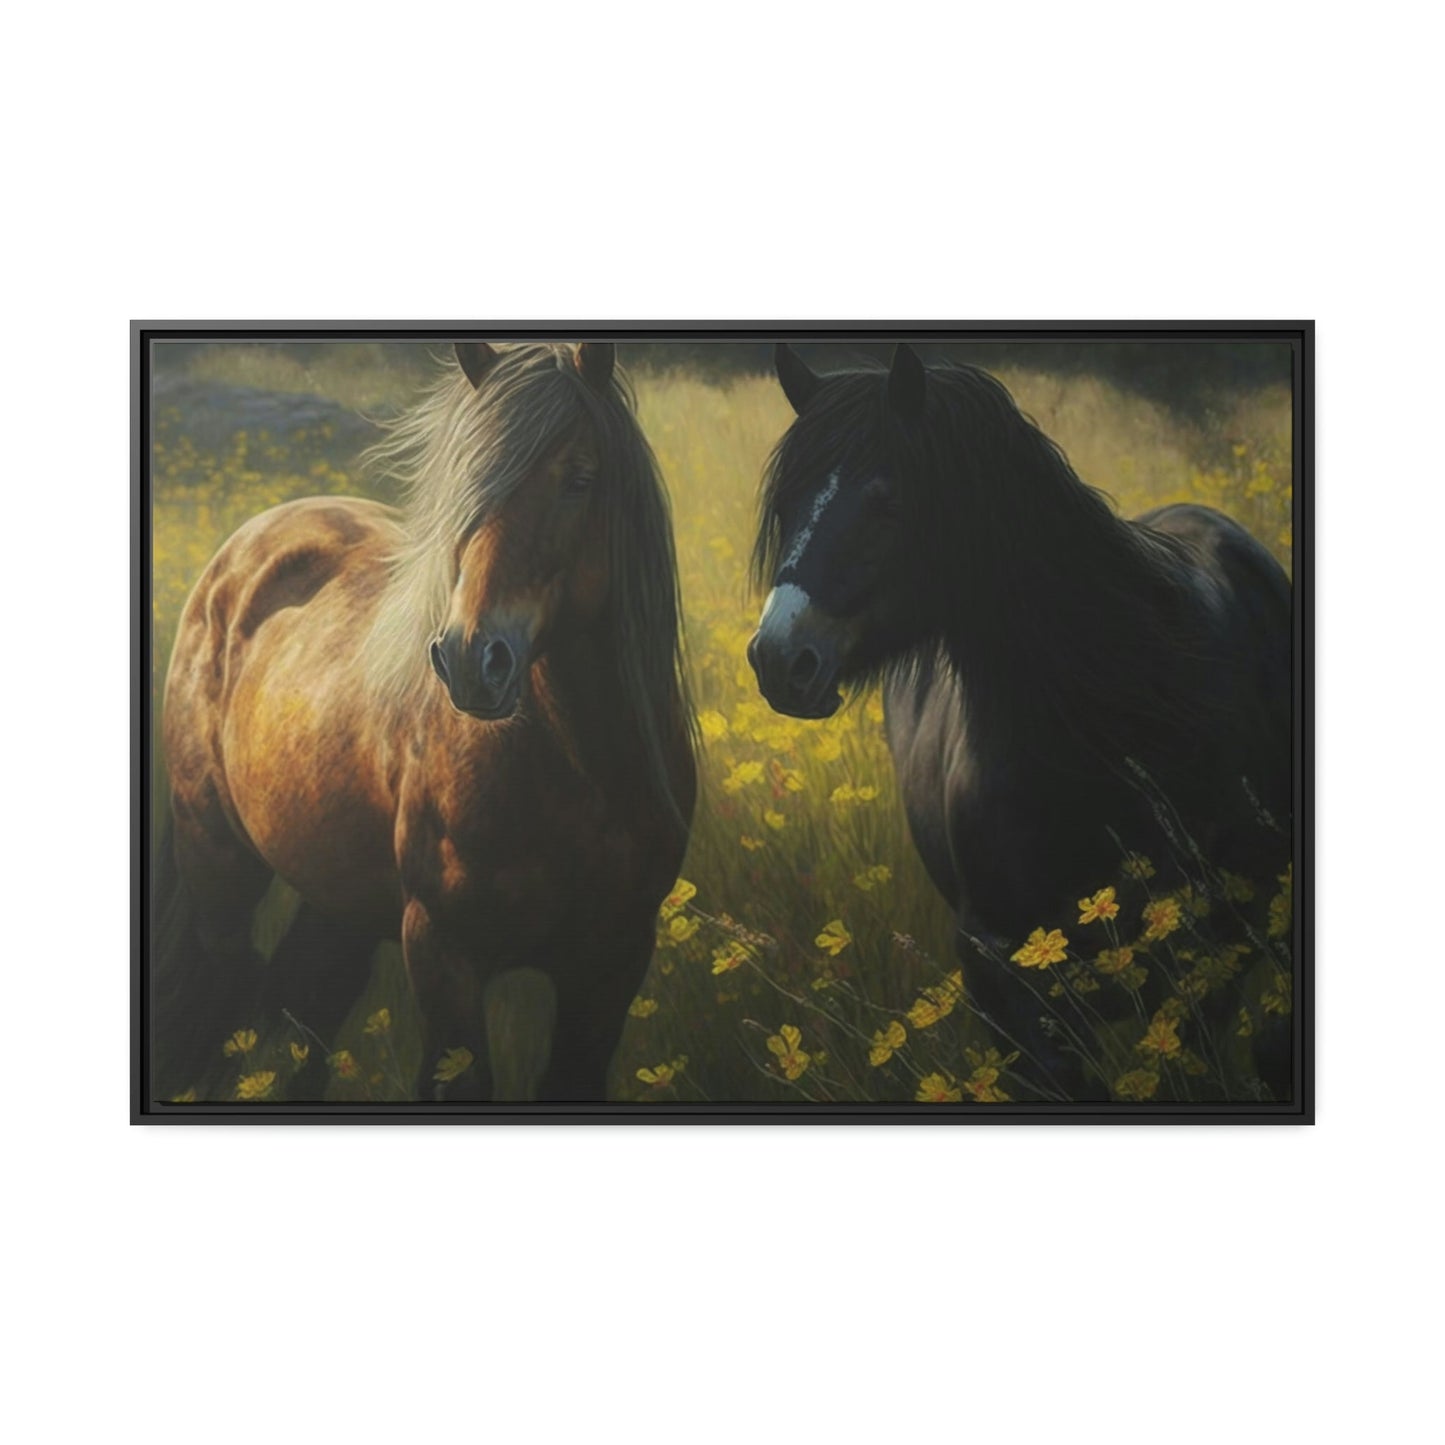 Wild Horses: A Canvas Rustic Adventure